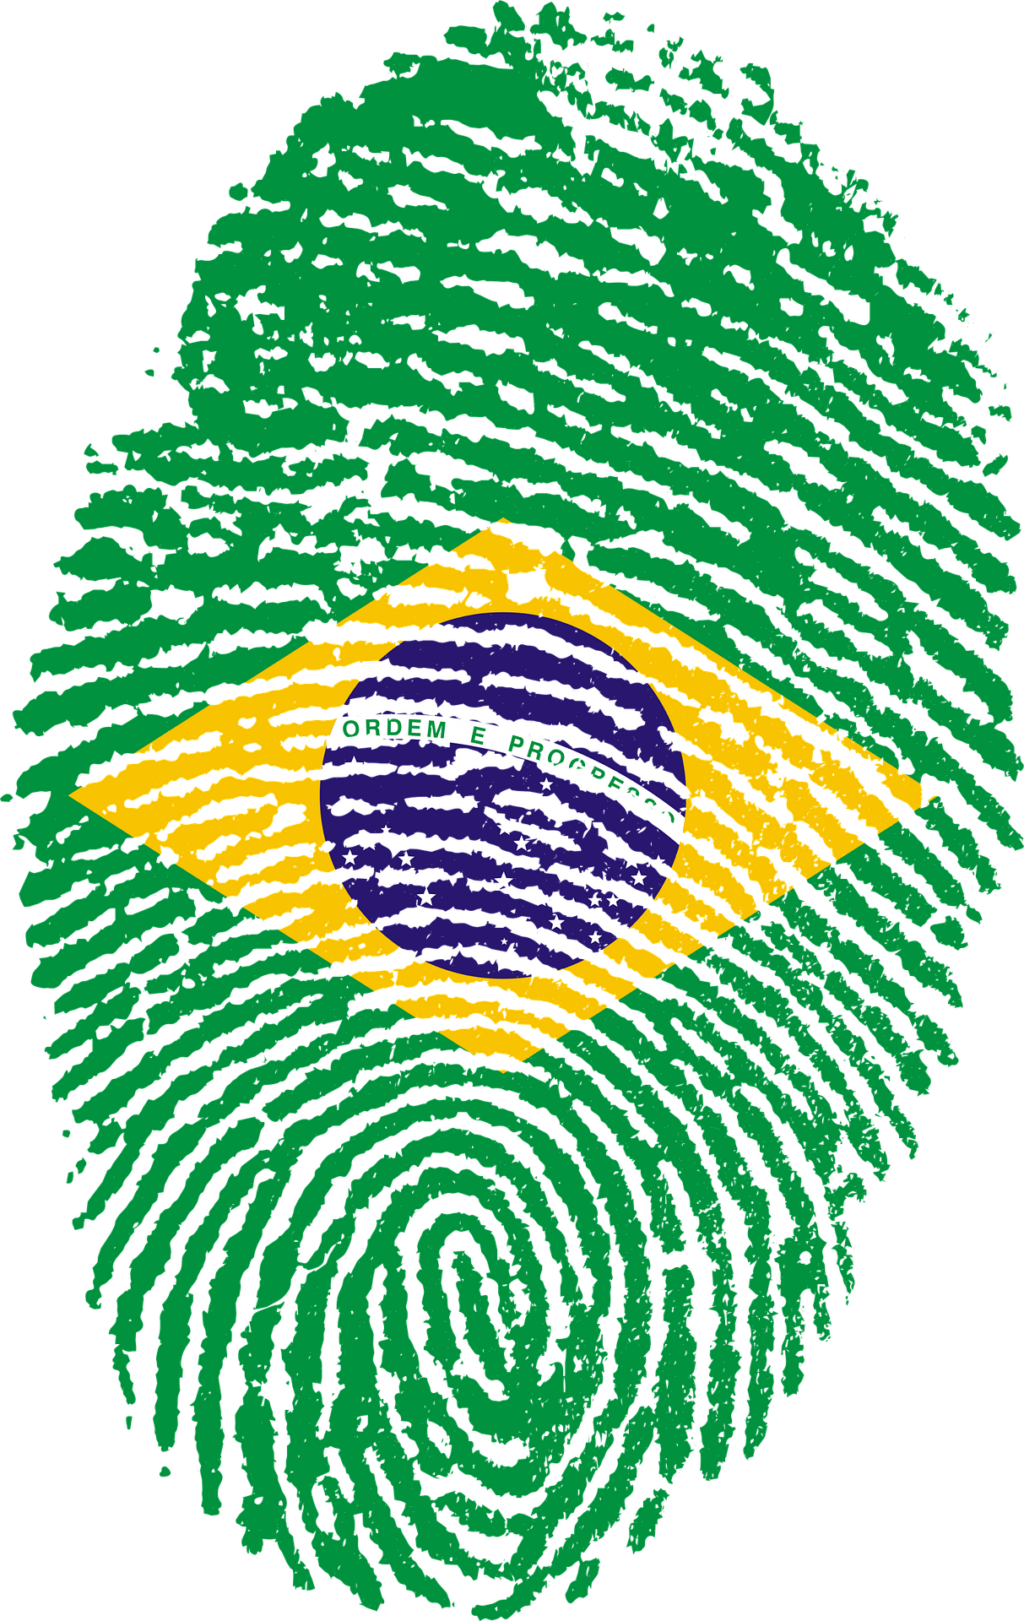 Preservar as brasilidades é essencial para a identidade do Brasil